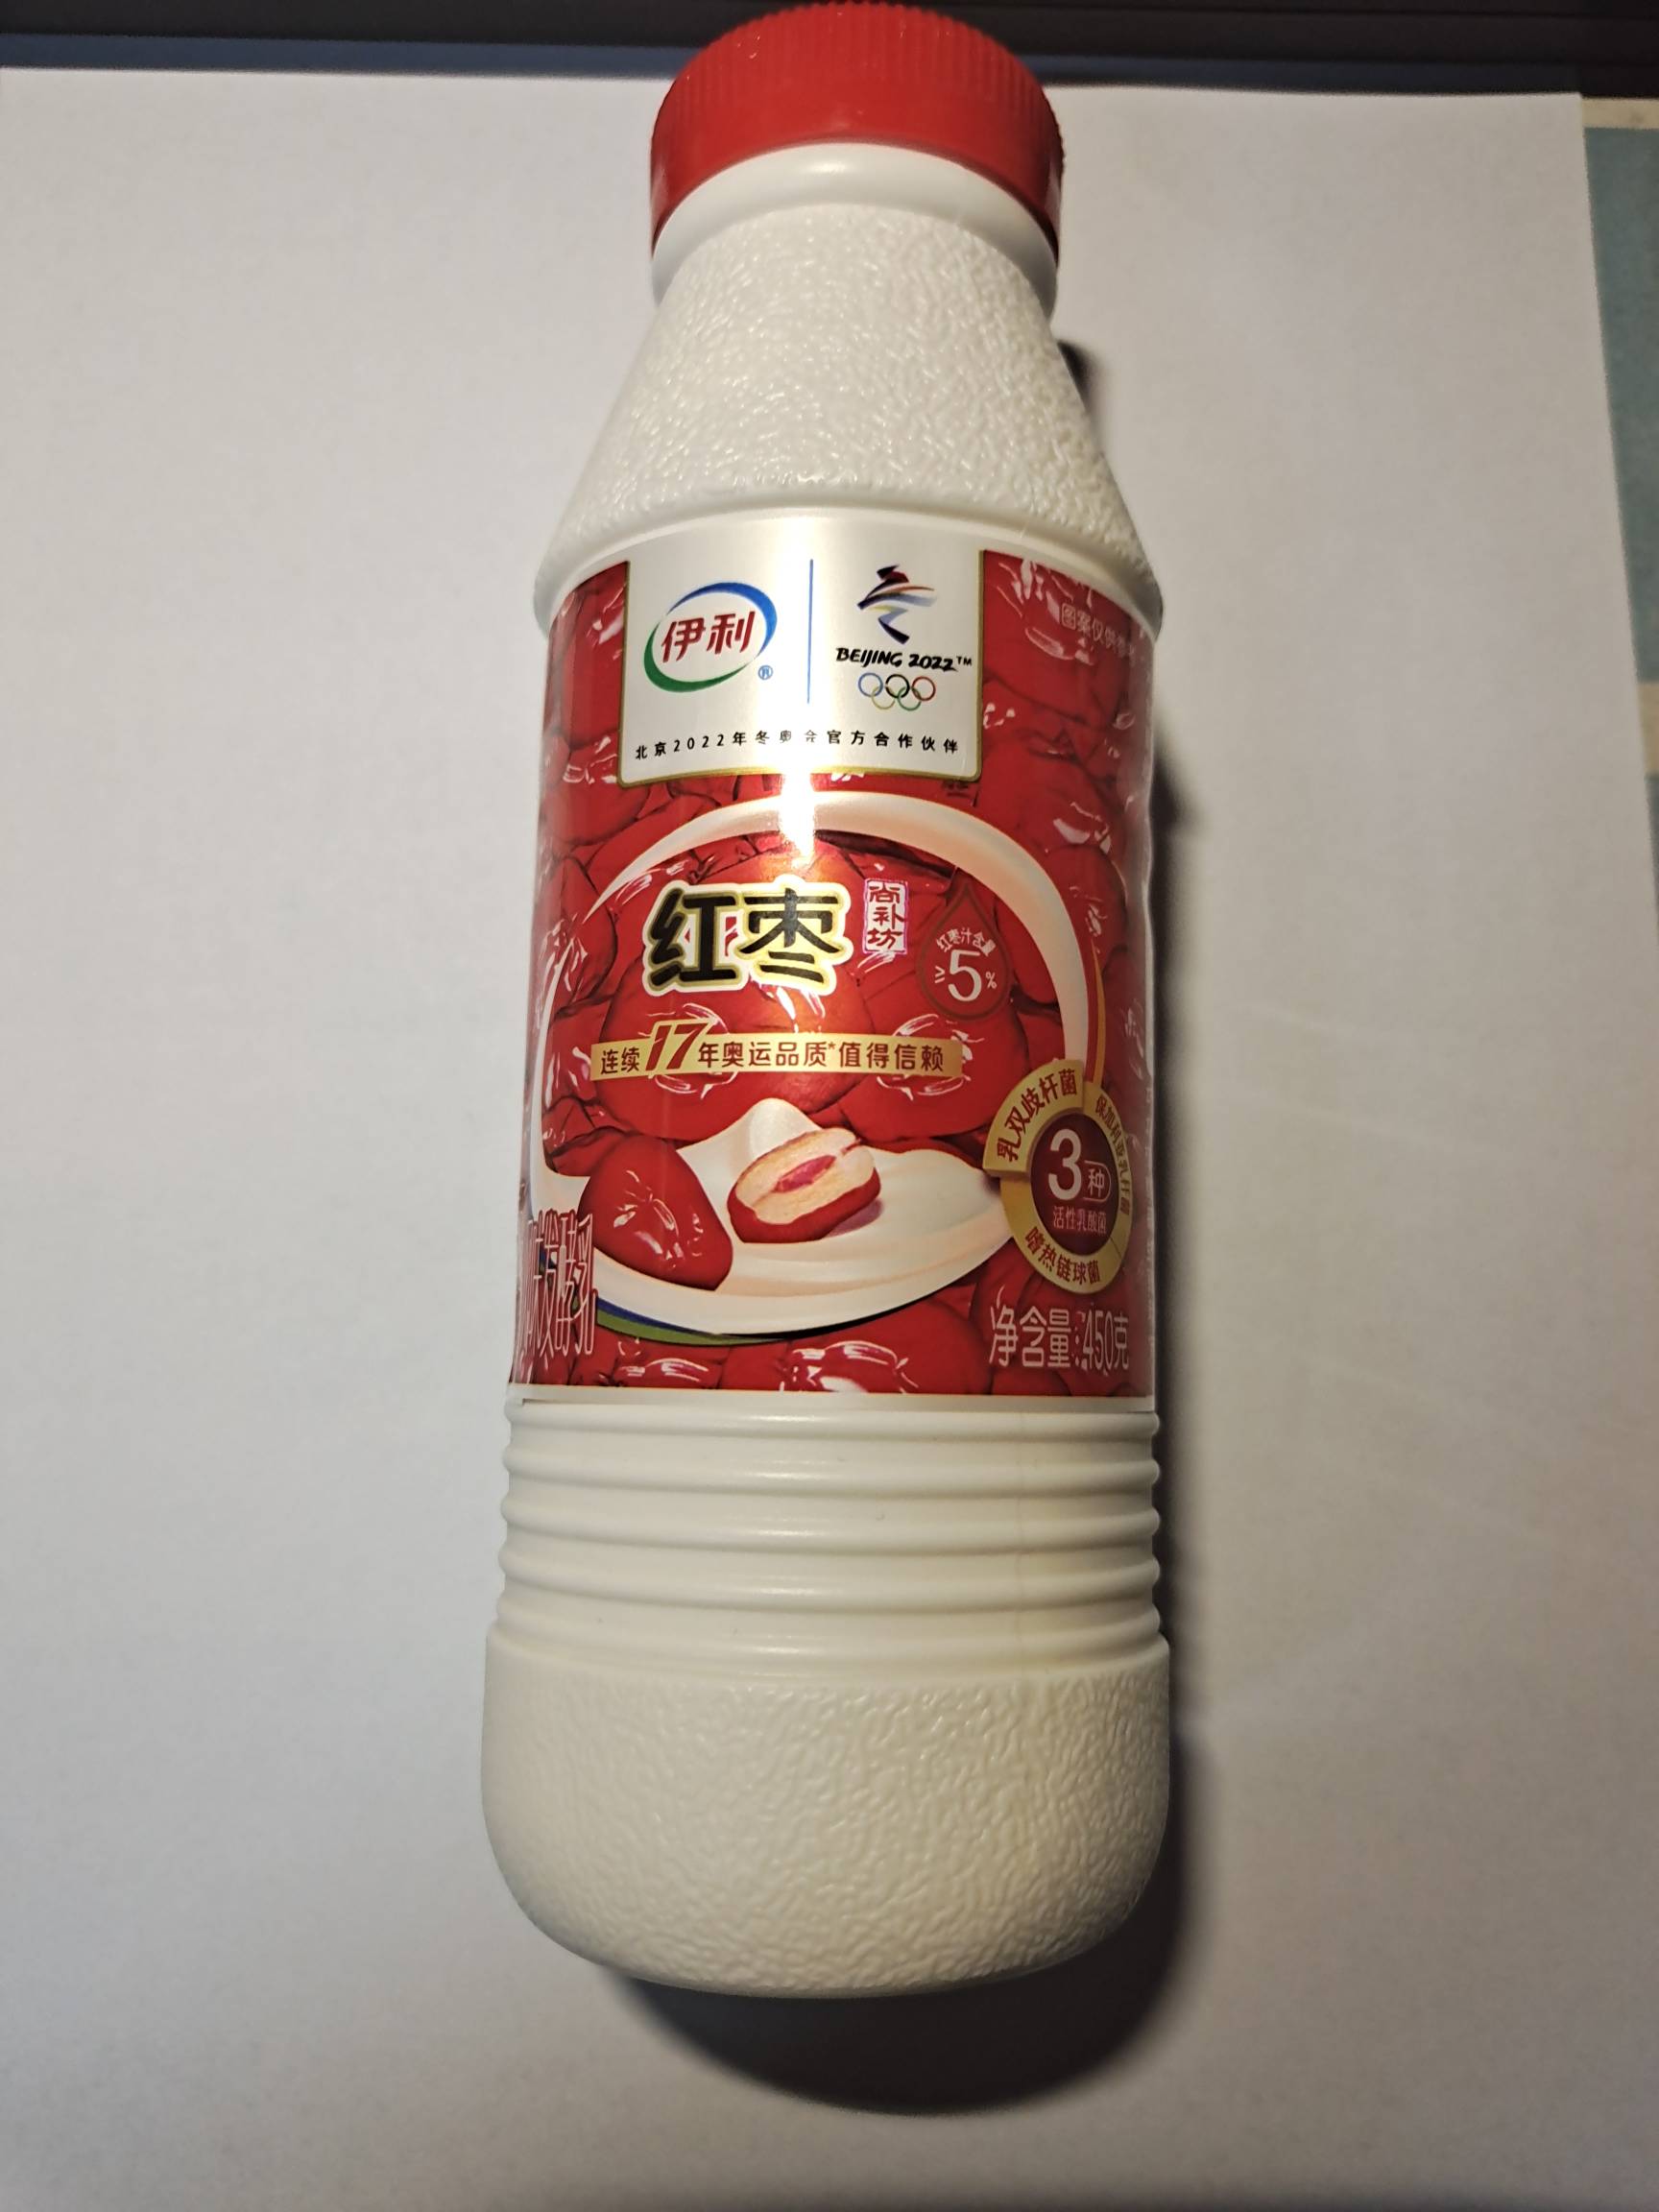 伊利风味发酵乳的热量和减肥功效